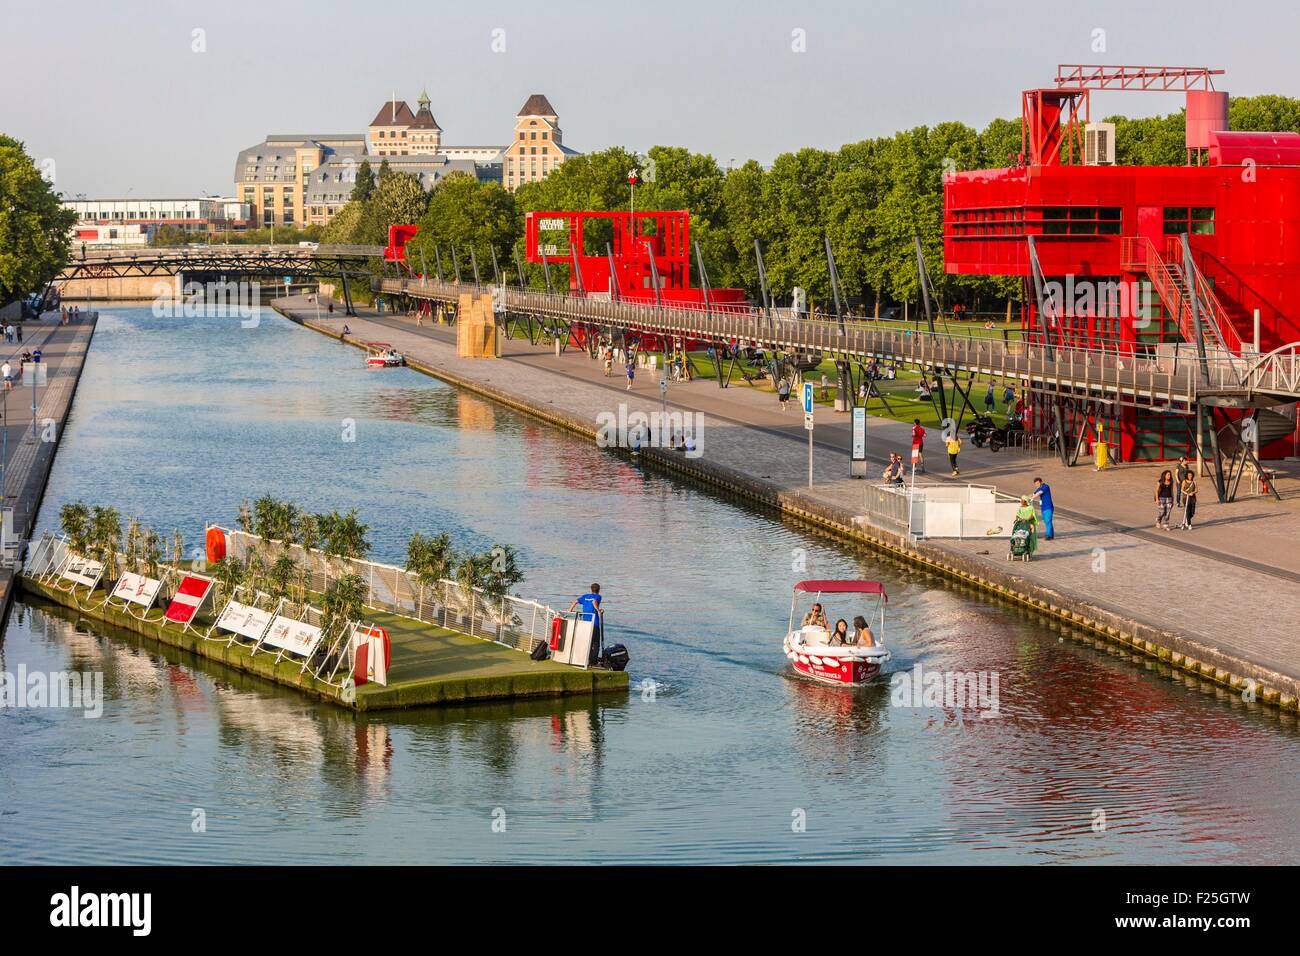 France, Paris, the Parc de la Villette, designed by architect Bernard Tschumi in 1983, the Ourcq canal, moving bridge Stock Photo